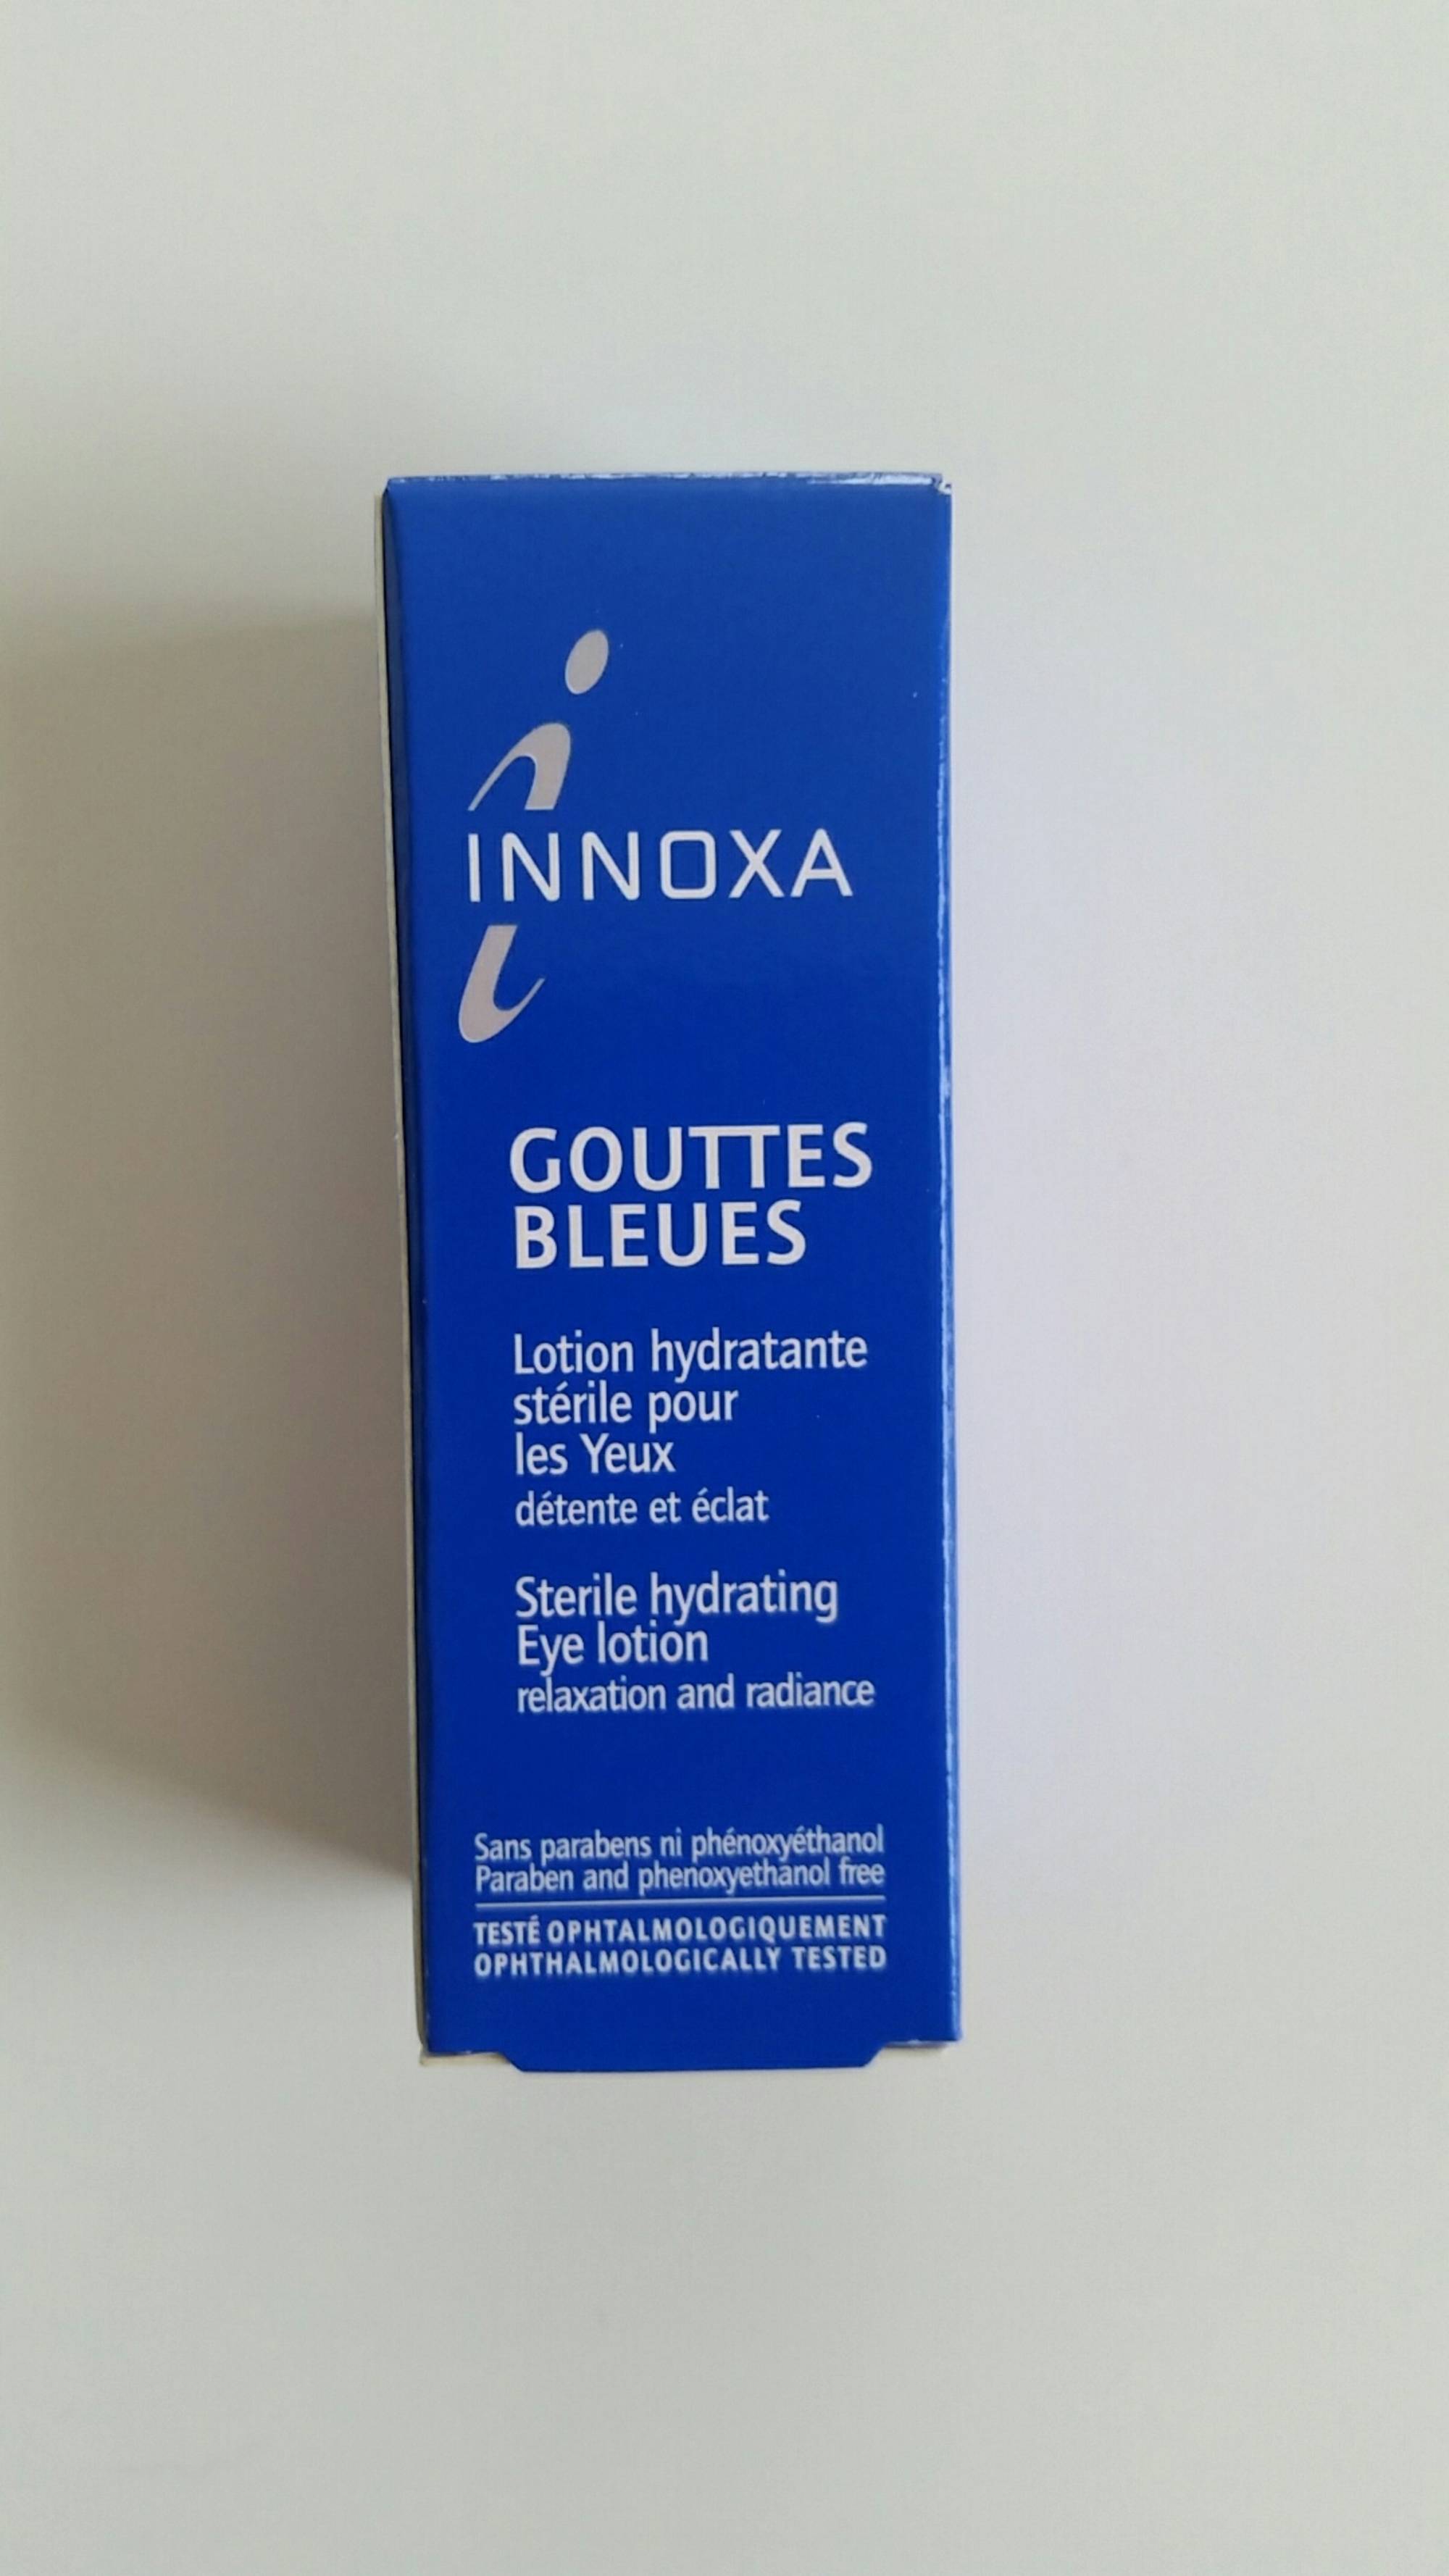 INNOXA - Gouttes bleues - Lotion hydratante stérile pour les yeux